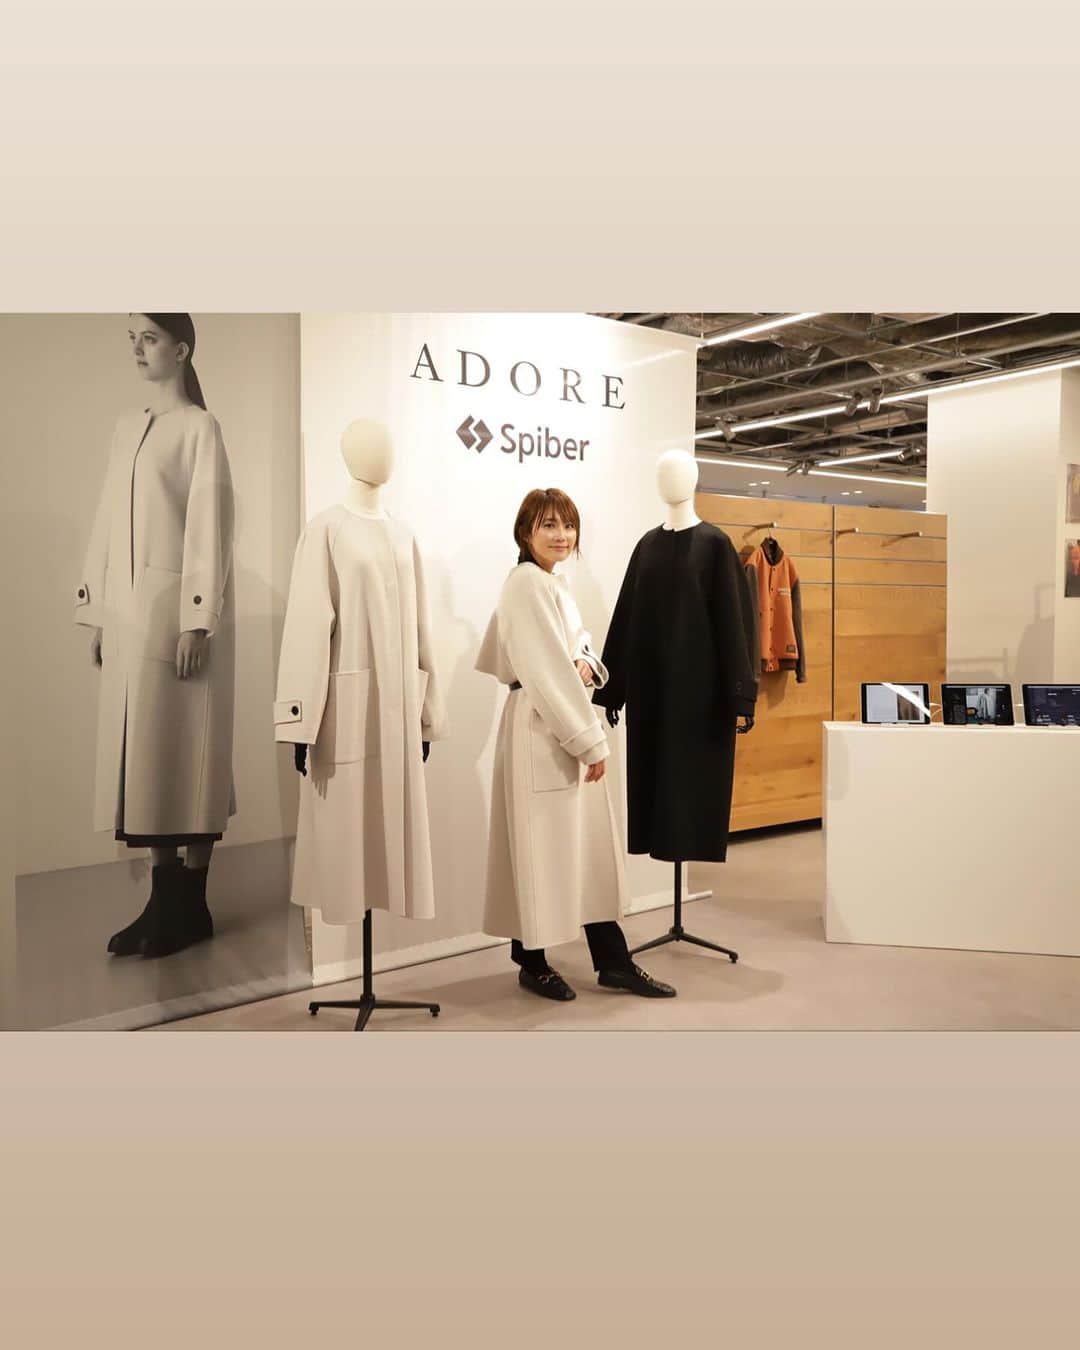 細田阿也のインスタグラム：「@adore_jp  @adore_jp_shop  #展示会 へ  憧れの#アドーア  オトナ心階段登りたくなる 深みある色味に 上品さを醸し出すシルエット 着心地、素材、デザイン  ずっとブラックジャケットを羽織り司会の時に支えてもらいたいを目標にしながら 邁進しております。  可愛くてエレガントな白ブラウスにパンツの画像がダウンロードできてなかった🫣 セットで欲しかった組み合わせでした🥹  今回オーダーもさせて頂きながら  兼ねてから描いていた #adore が似合うオトナになろう、 相応しいシルエットになろうと改めて志しながら  お声がけいただきいつもあたたかく迎えてくださる  @naoko_akiyama_  秋山さんはじめ　  まるさんや♡ ご対応頂いた皆さんの優しさが沁みて、包まれて また頑張ろうと活力をいただいてます🥹  いつも気にかけてくださり ありがとうございます✨」